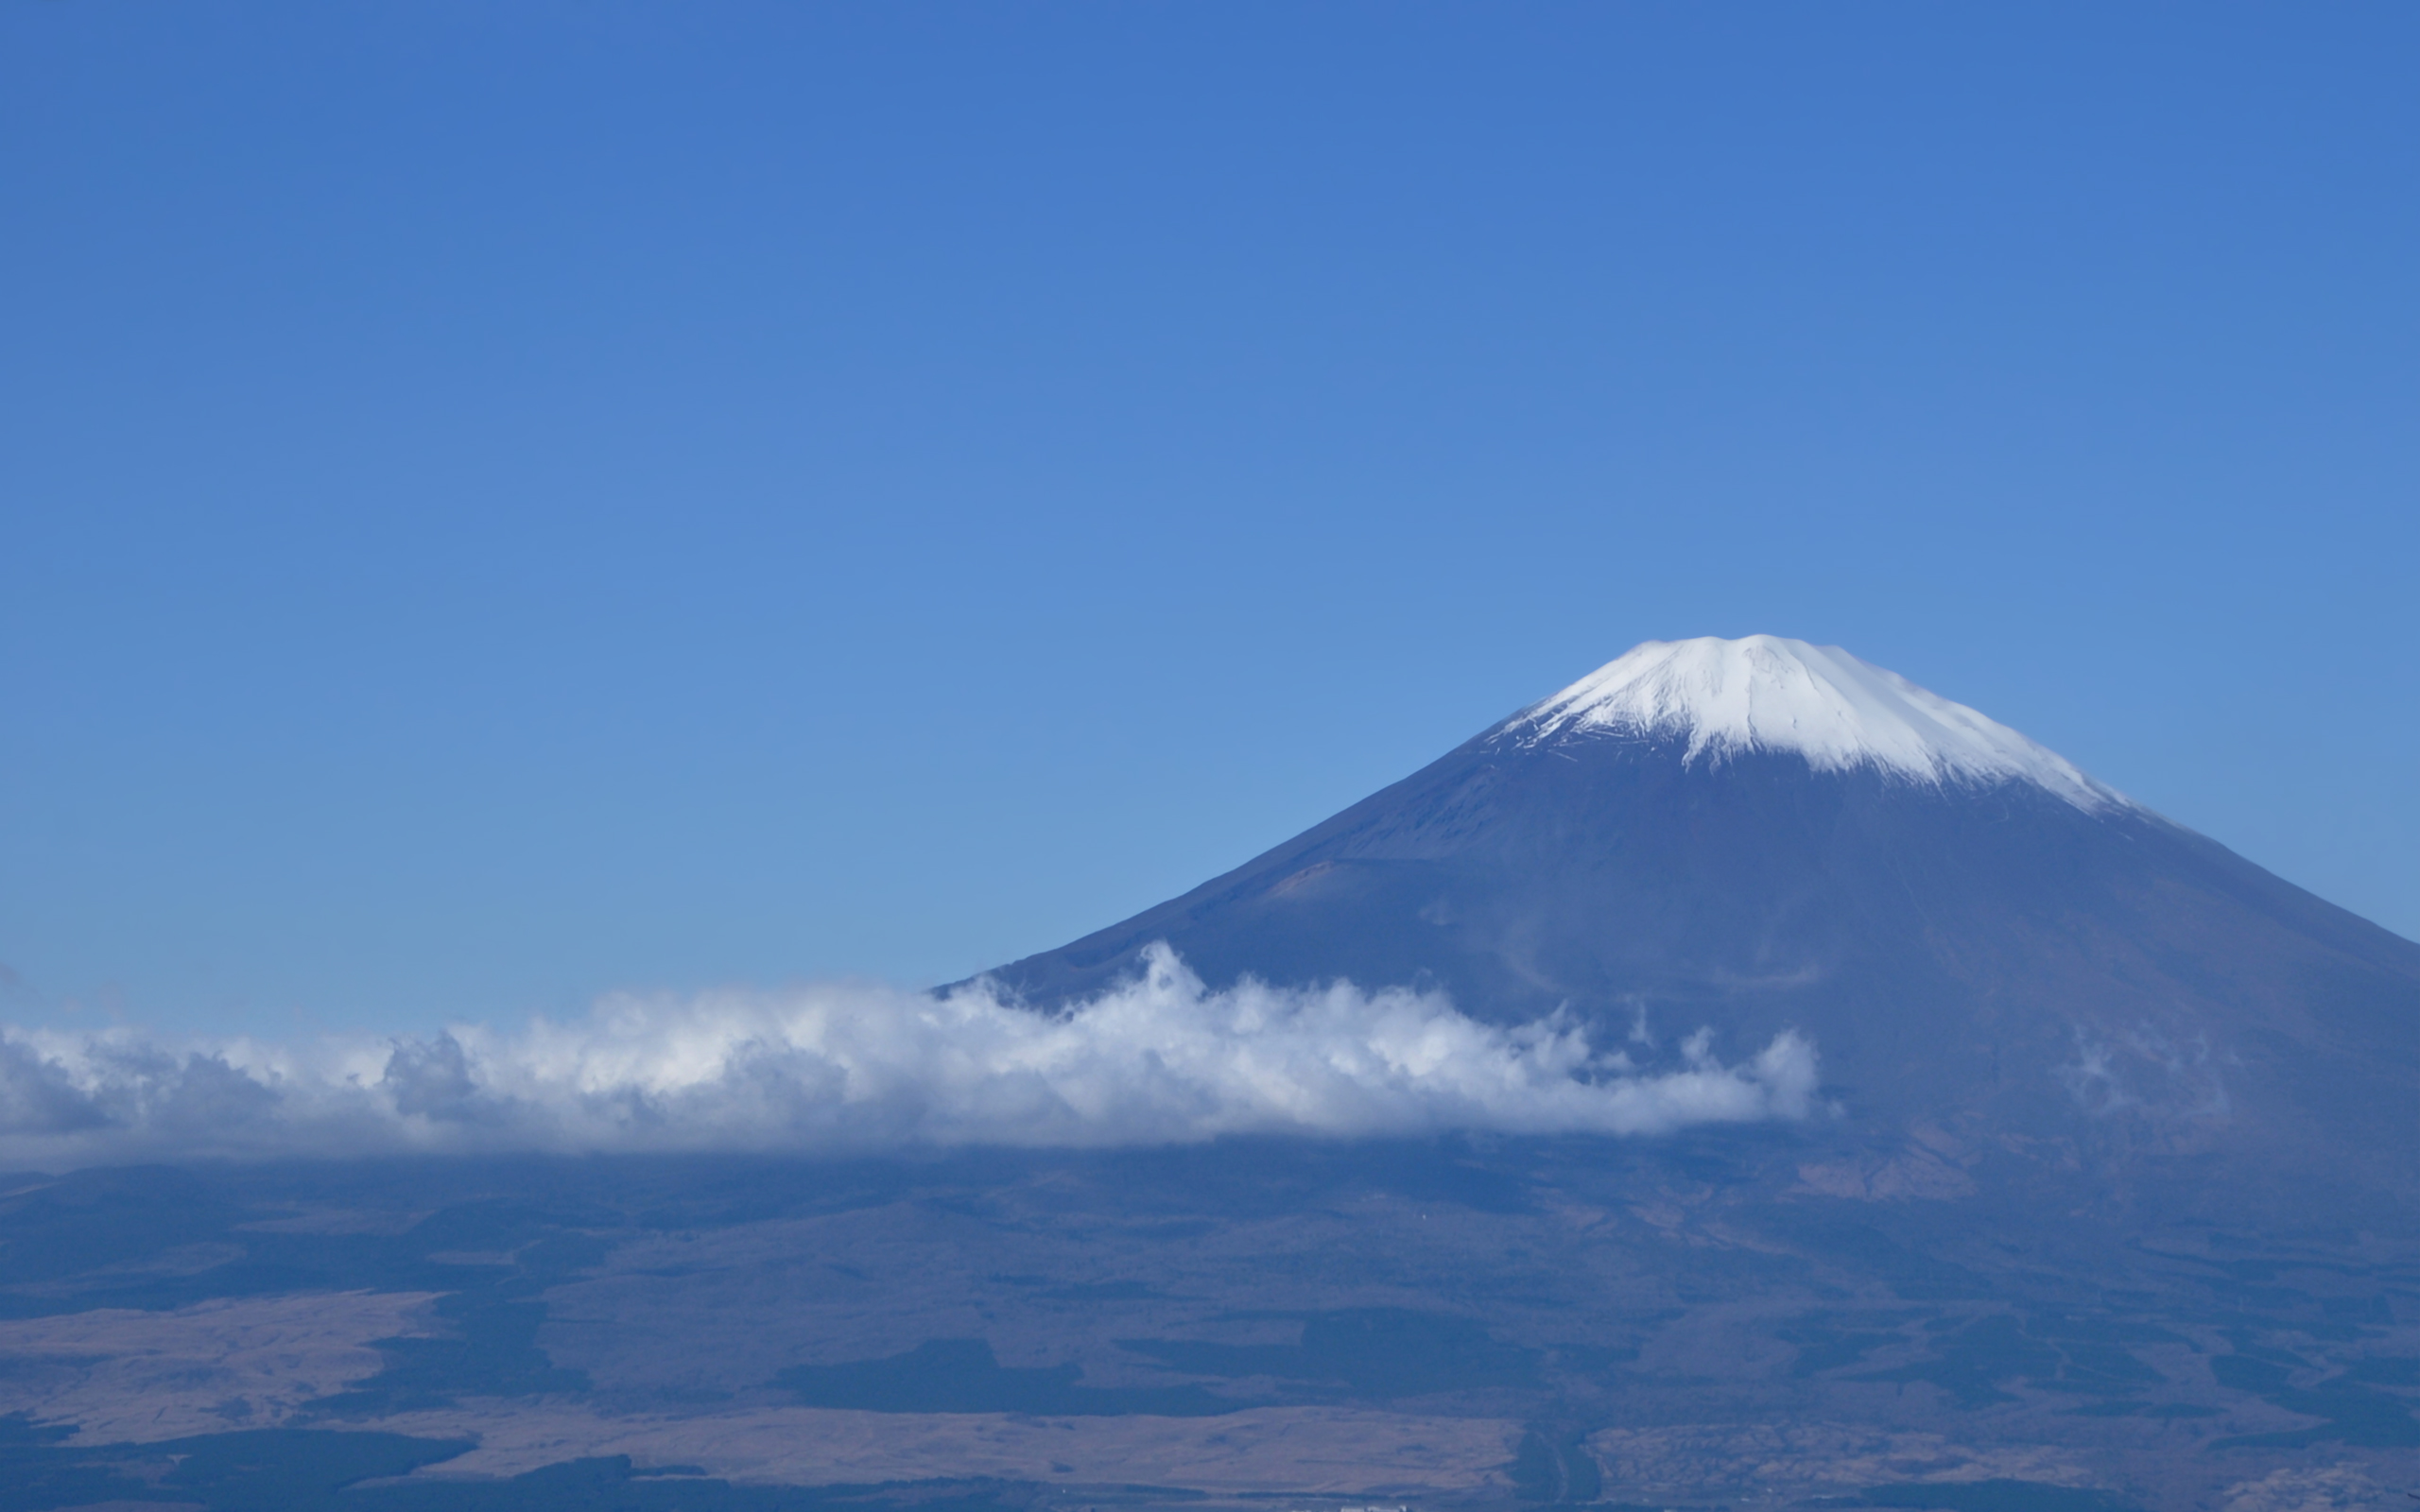 壁紙 富士山の壁紙 世界遺産 2560x1600 壁紙 富士山の壁紙 絶景世界遺産 Naver まとめ